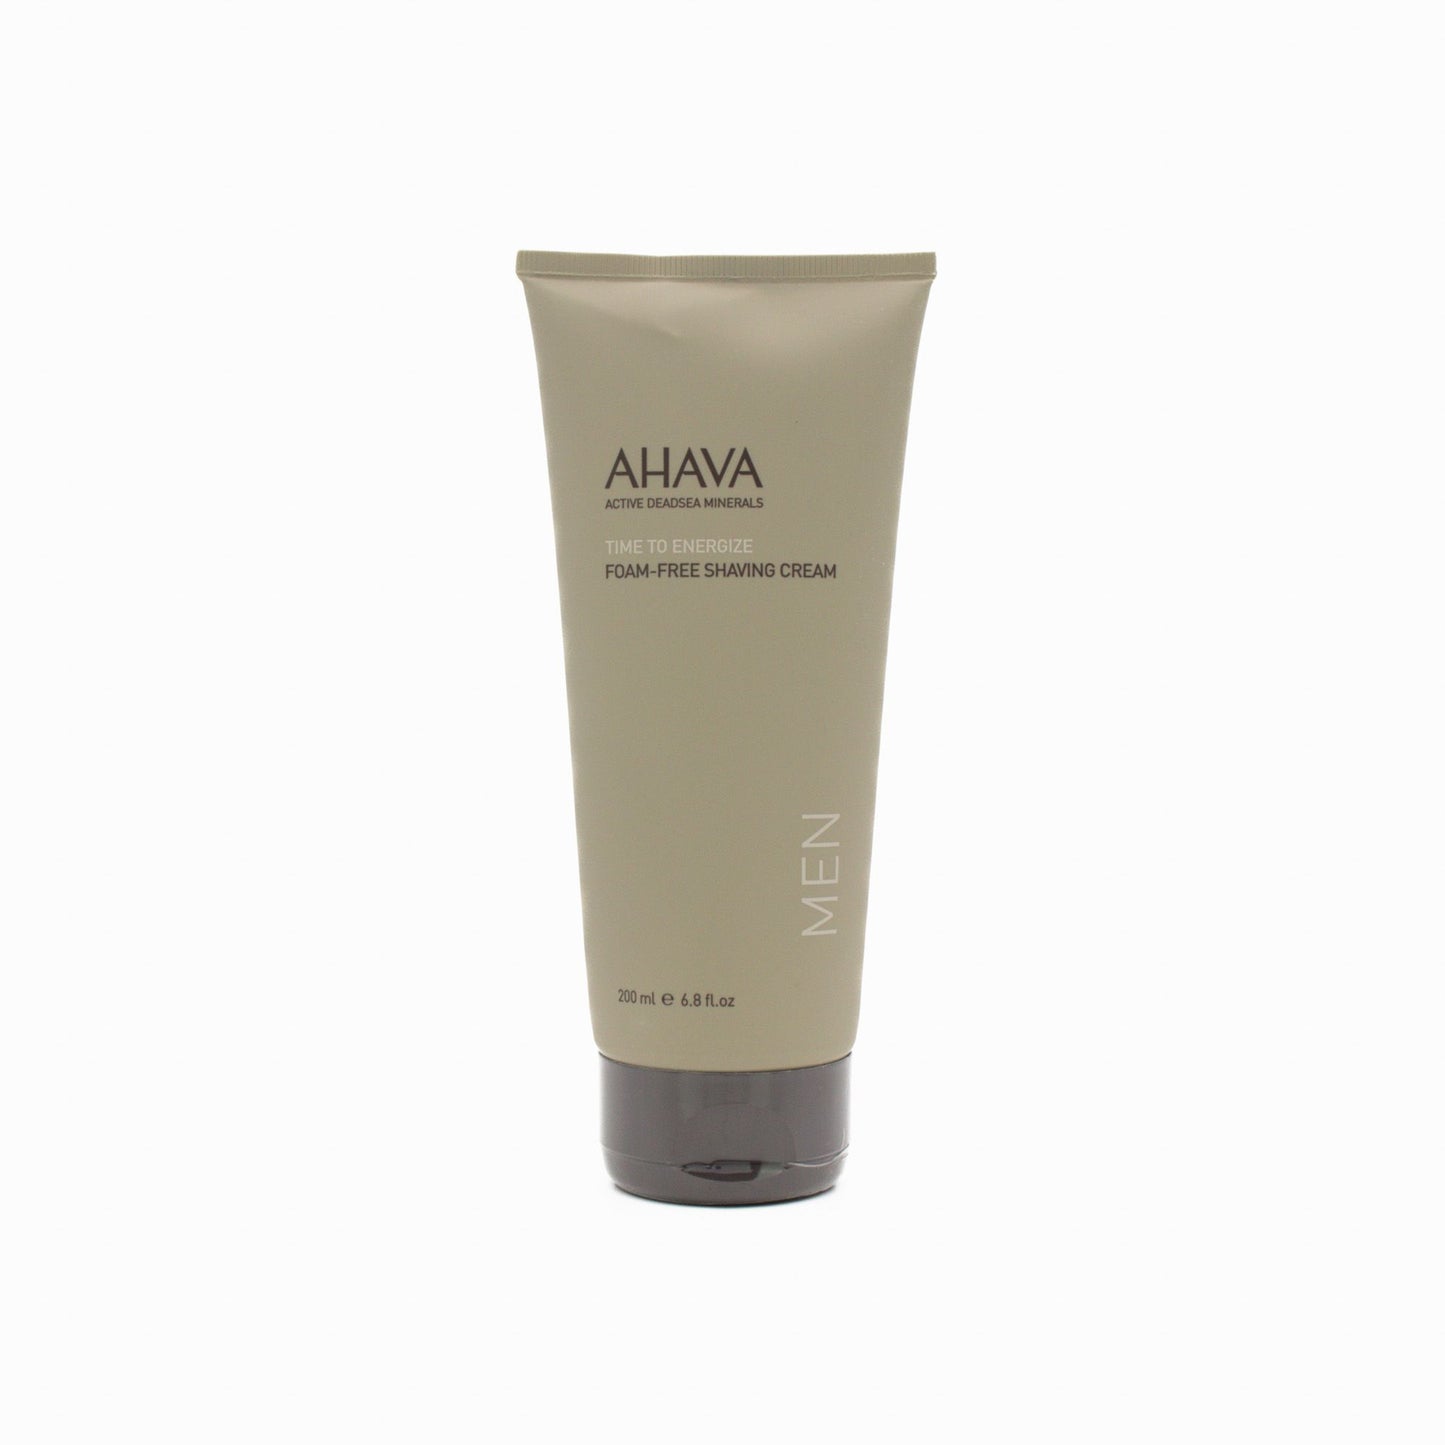 AHAVA Men's Foam-Free Shaving Cream 200ml - Imperfect Box